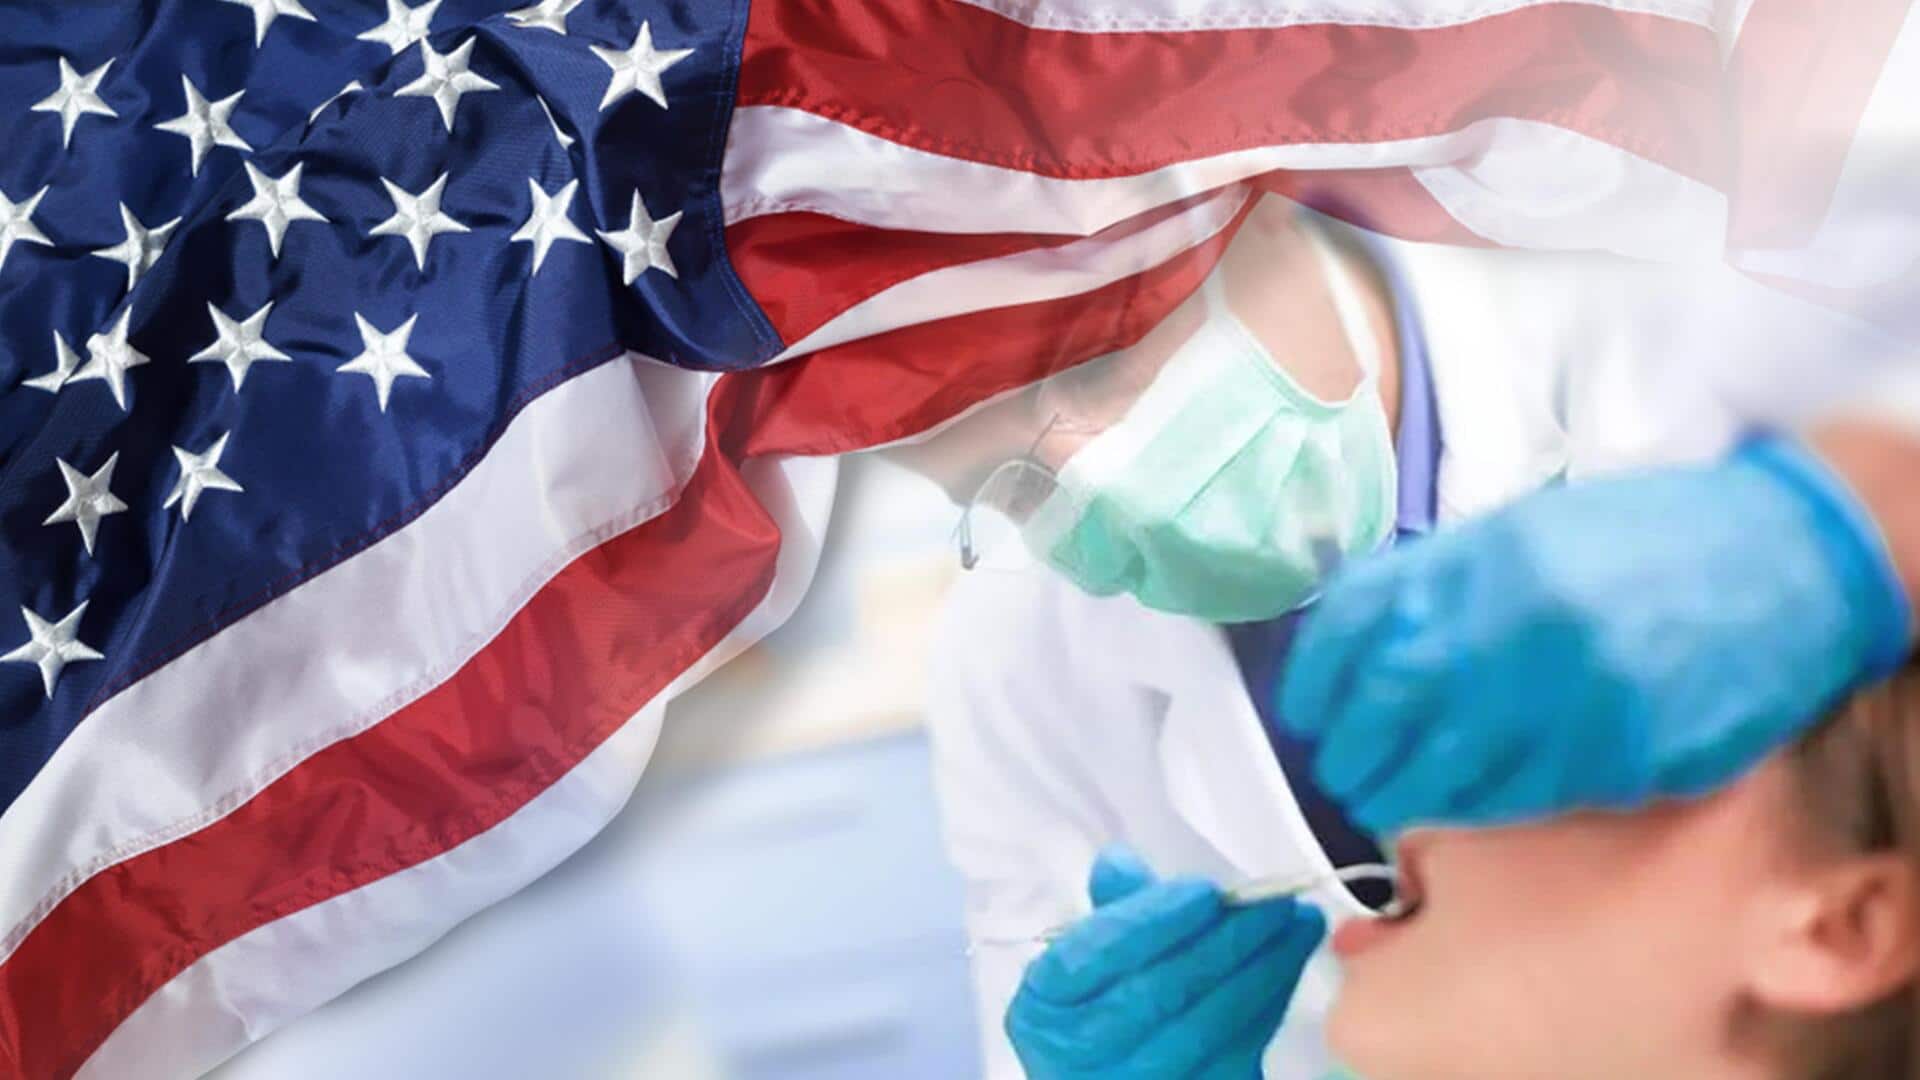 अमेरिका: डॉक्टर ने एक बार में ही किया मरीज के सारे दांतों का इलाज, अब फंसा